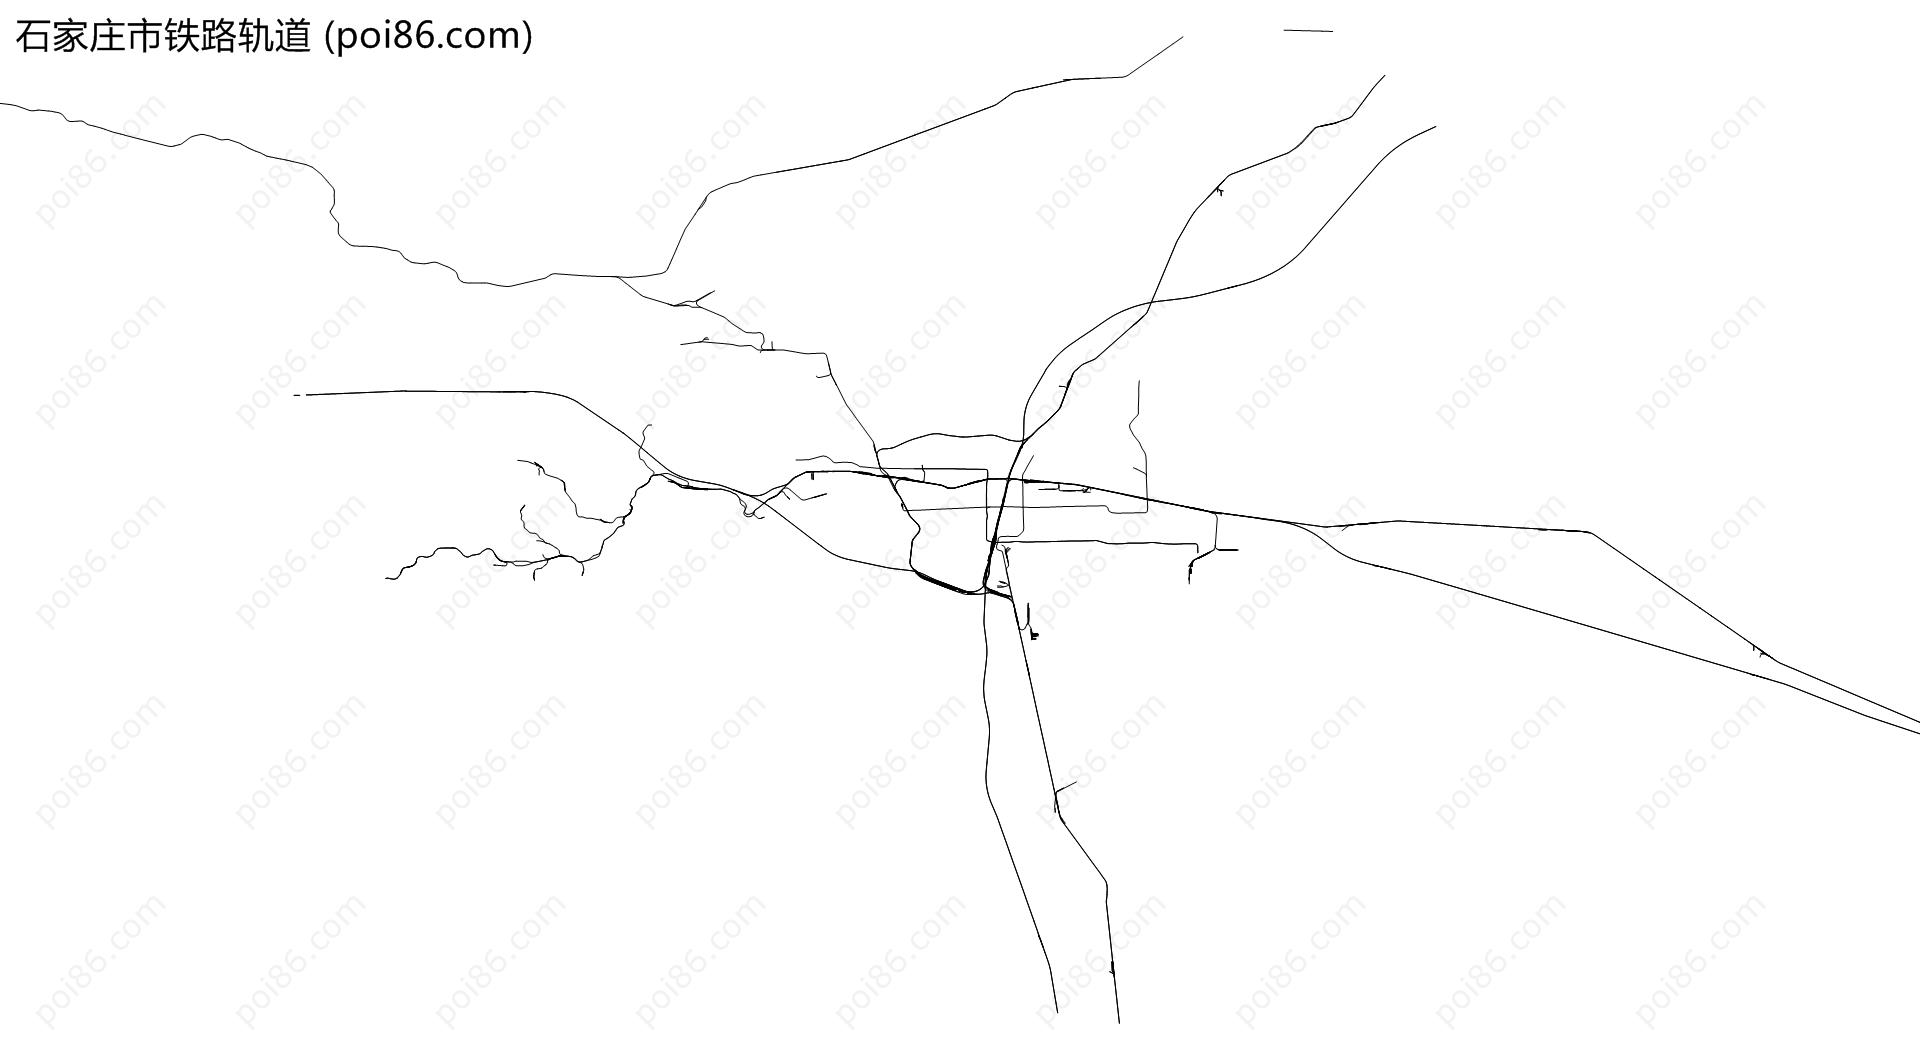 石家庄市铁路轨道地图